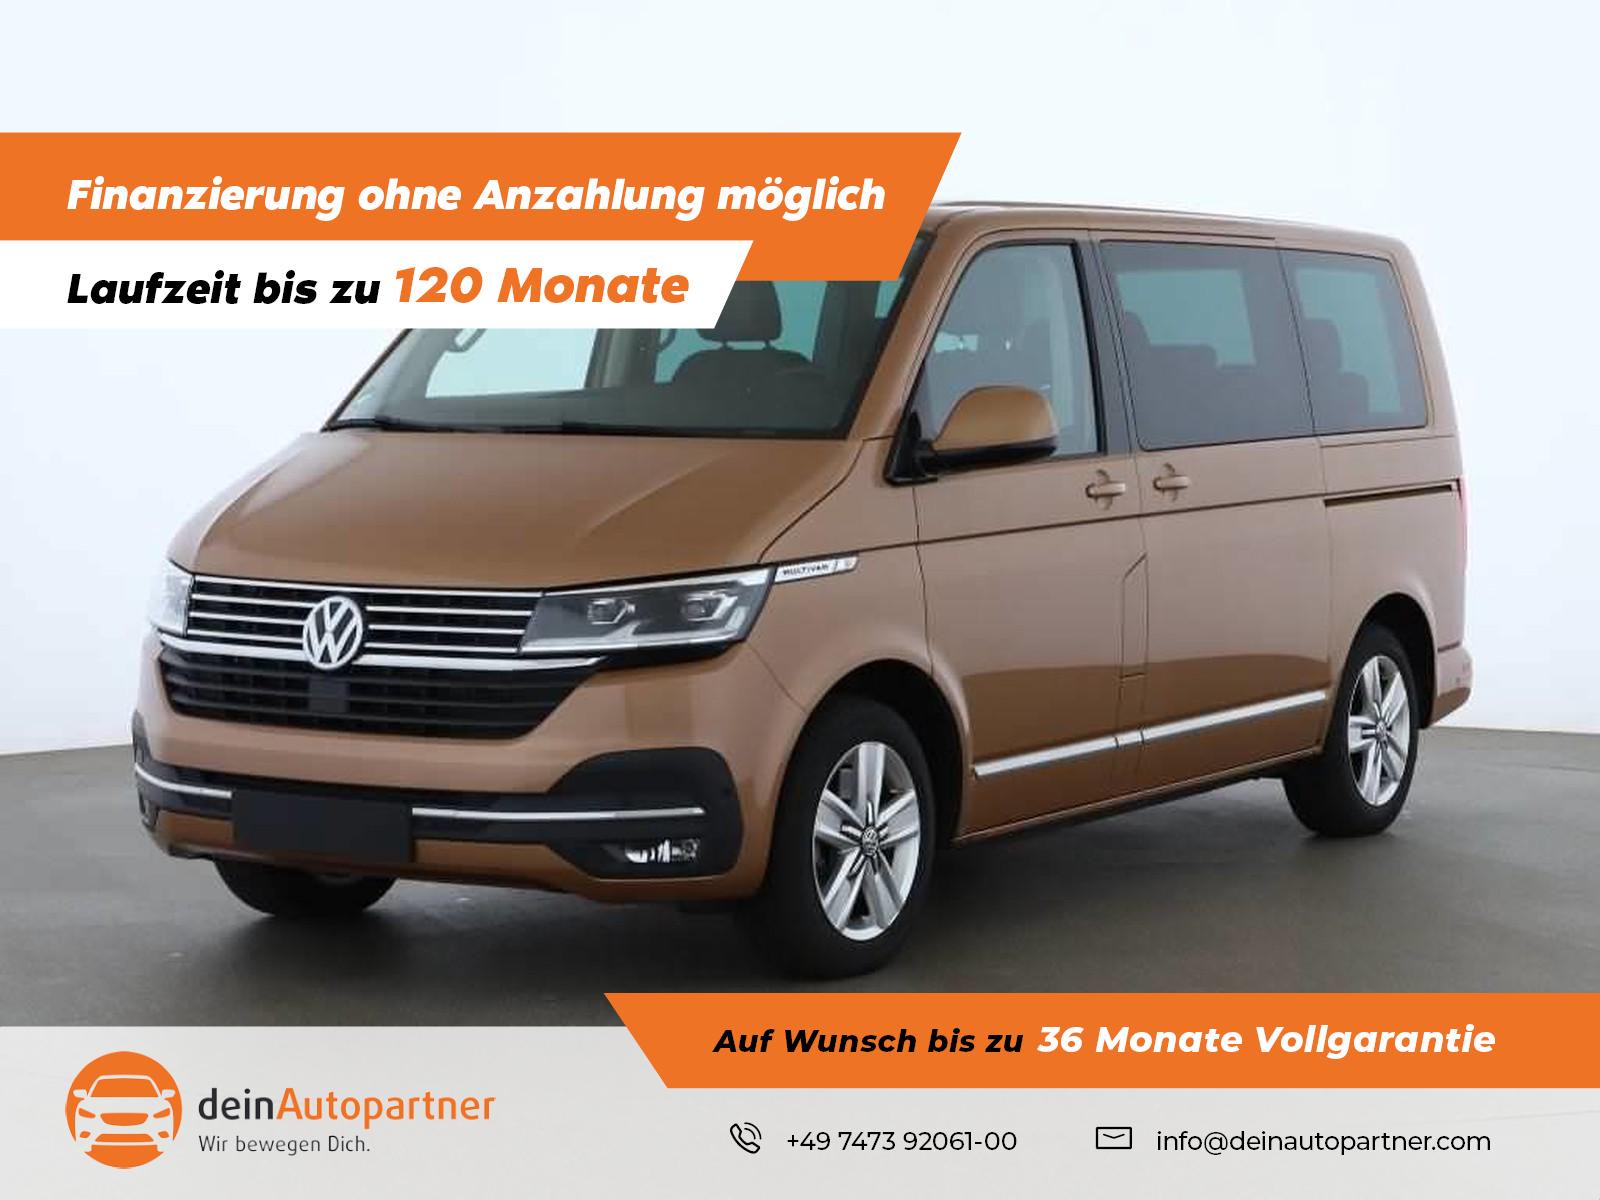 Volkswagen T6.1 Multivan gebraucht kaufen in Mössingen Preis 57690